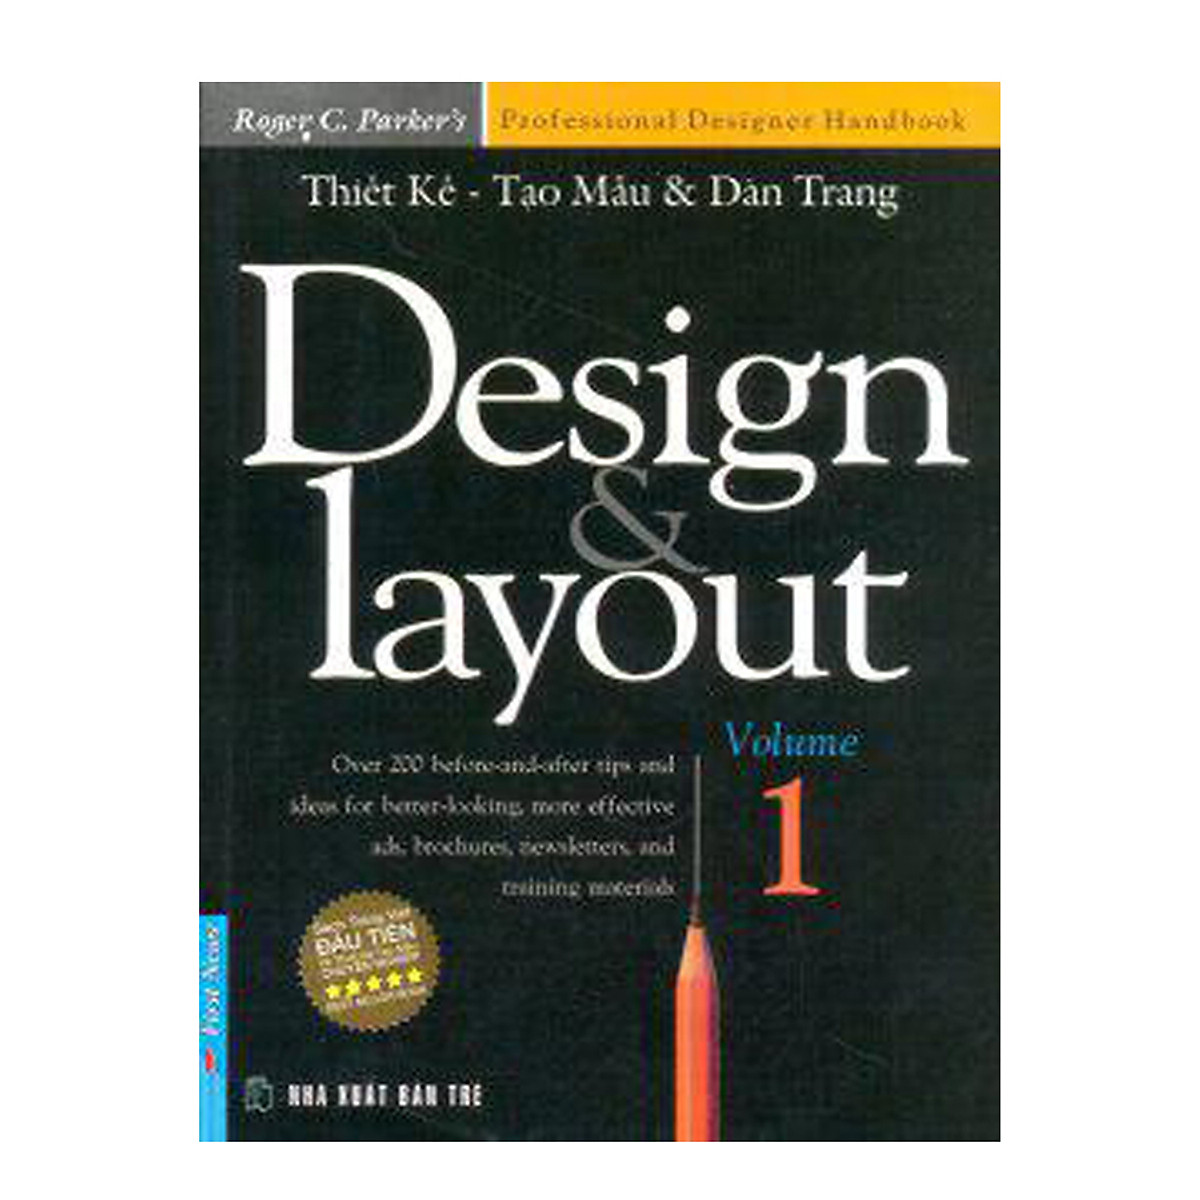 Design Layout Volume 1 (Thiết Kế Tạo Mẫu Và Dàn Trang)